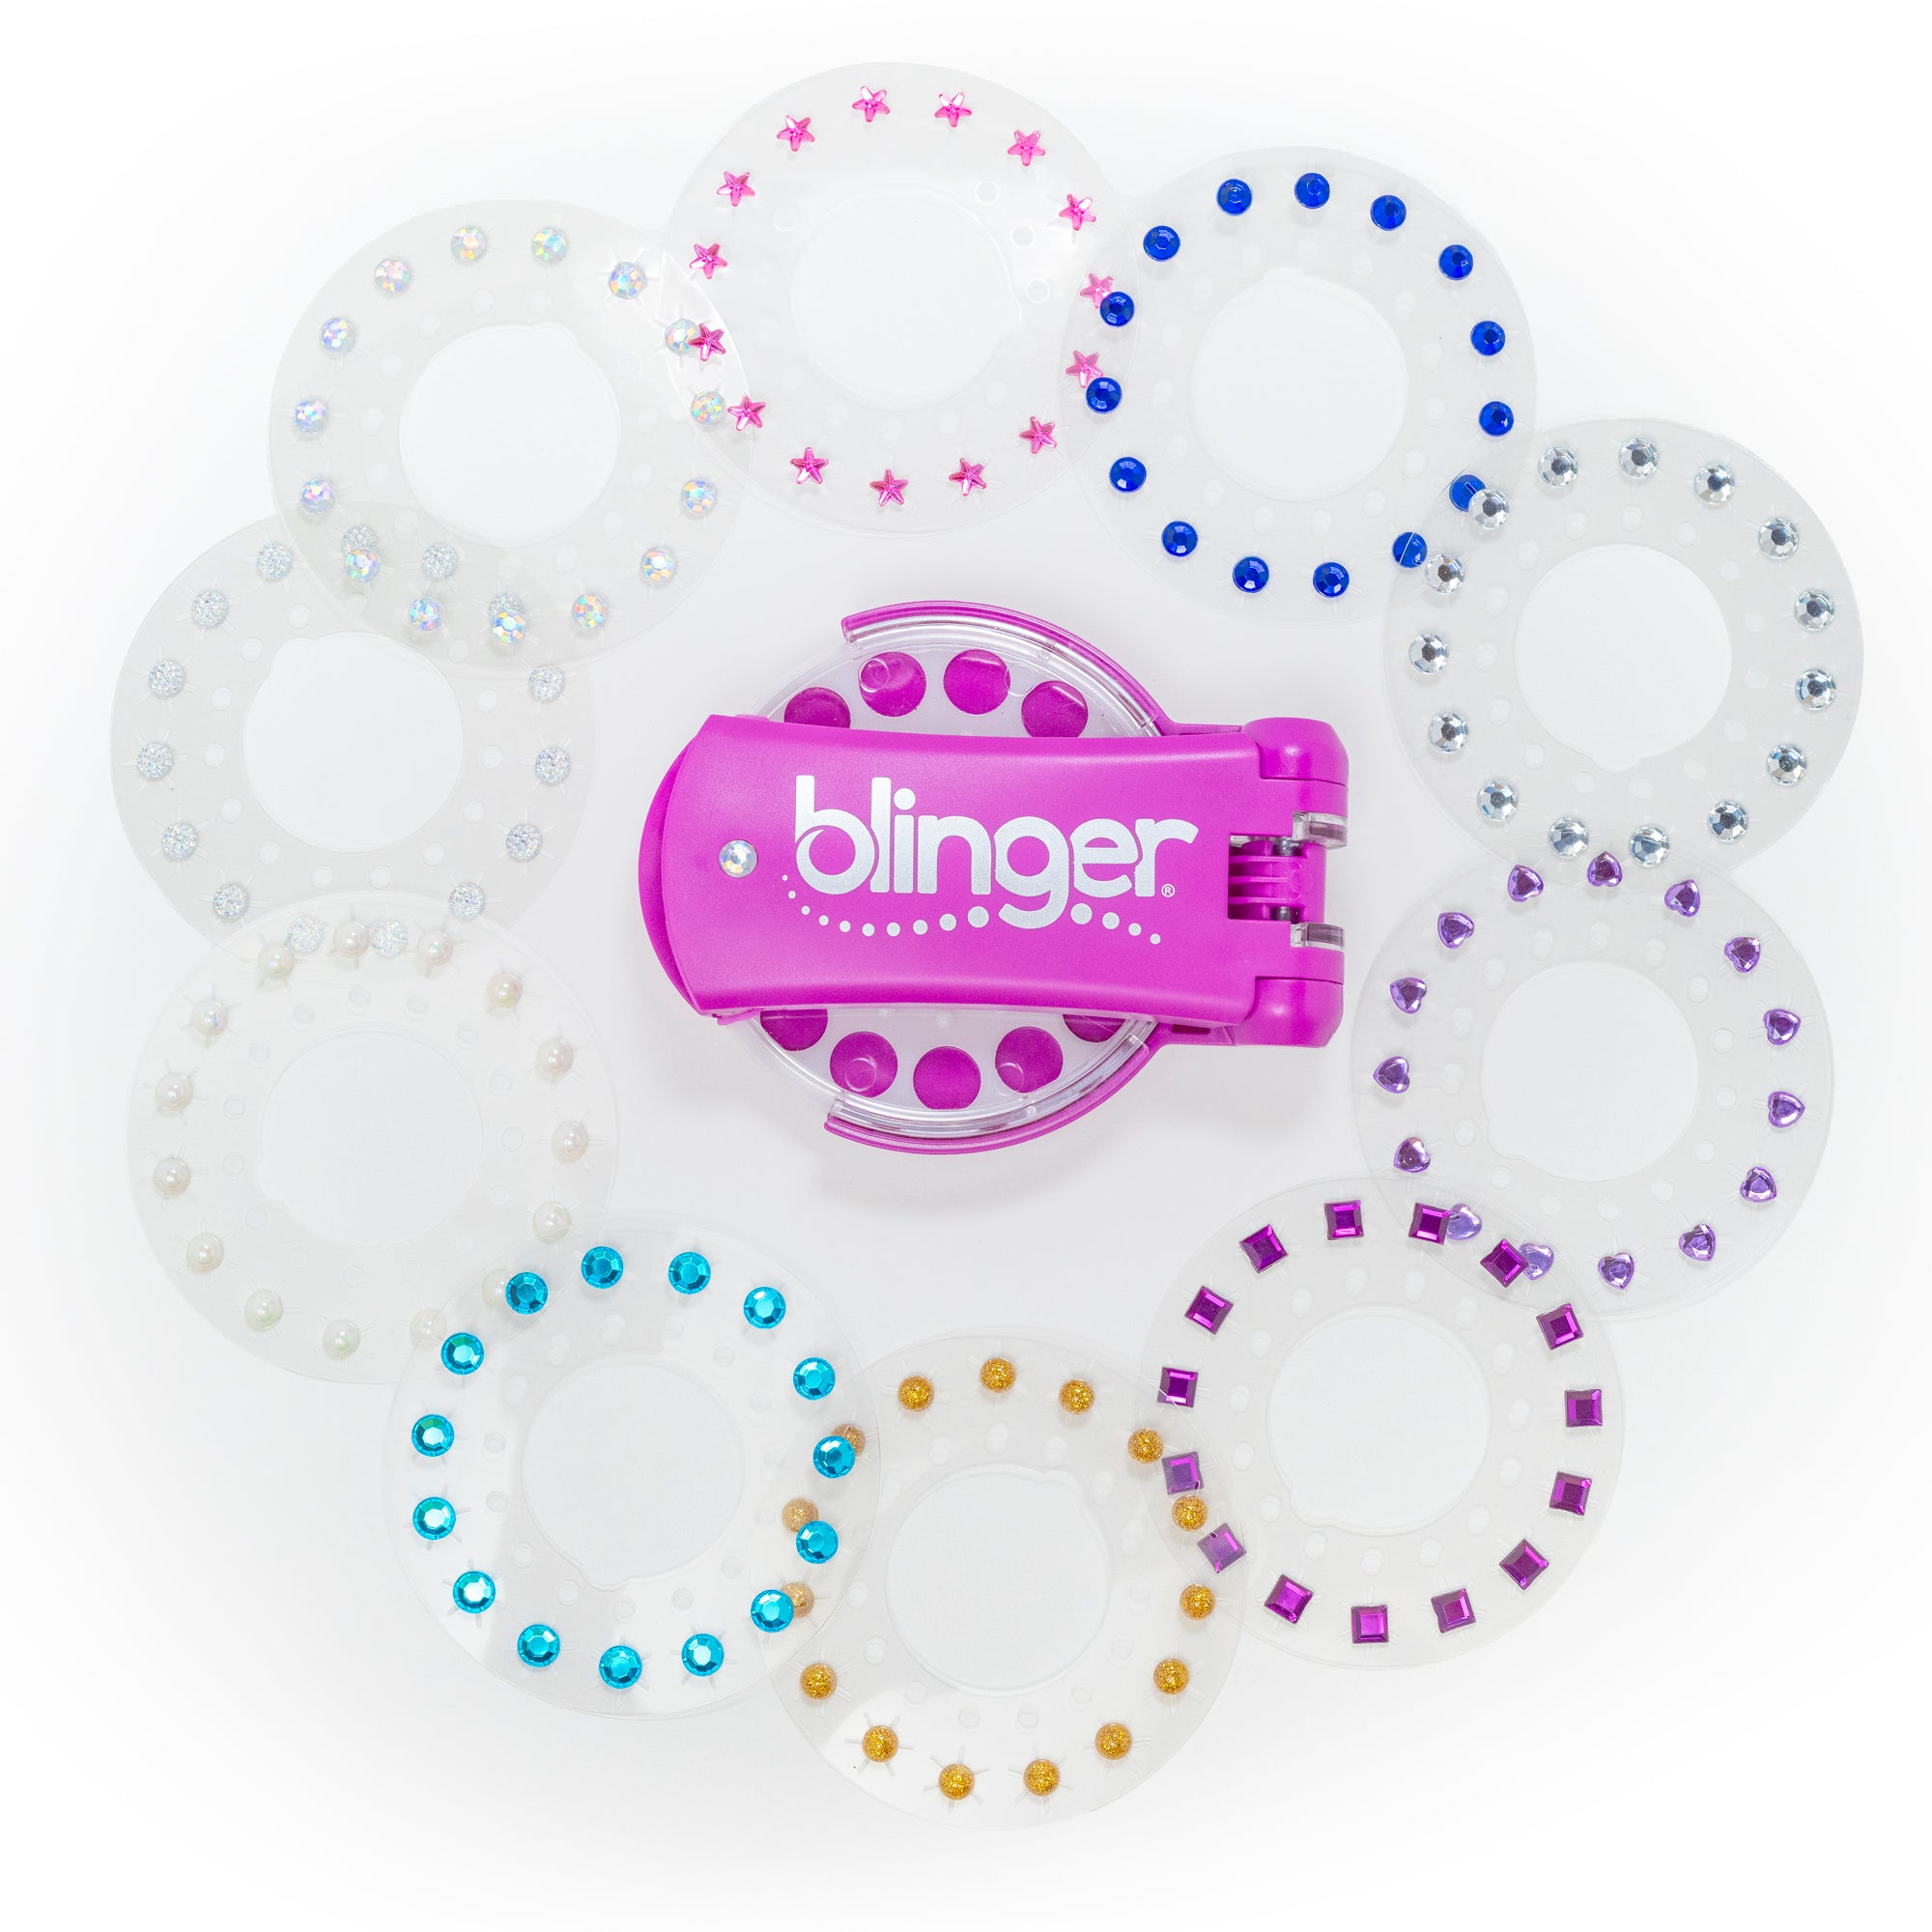 blinger® Radiance Collection Starter Kit with blinger® Gem Stamper (Magenta) + 150 Colorful Acrylic Rhinestones